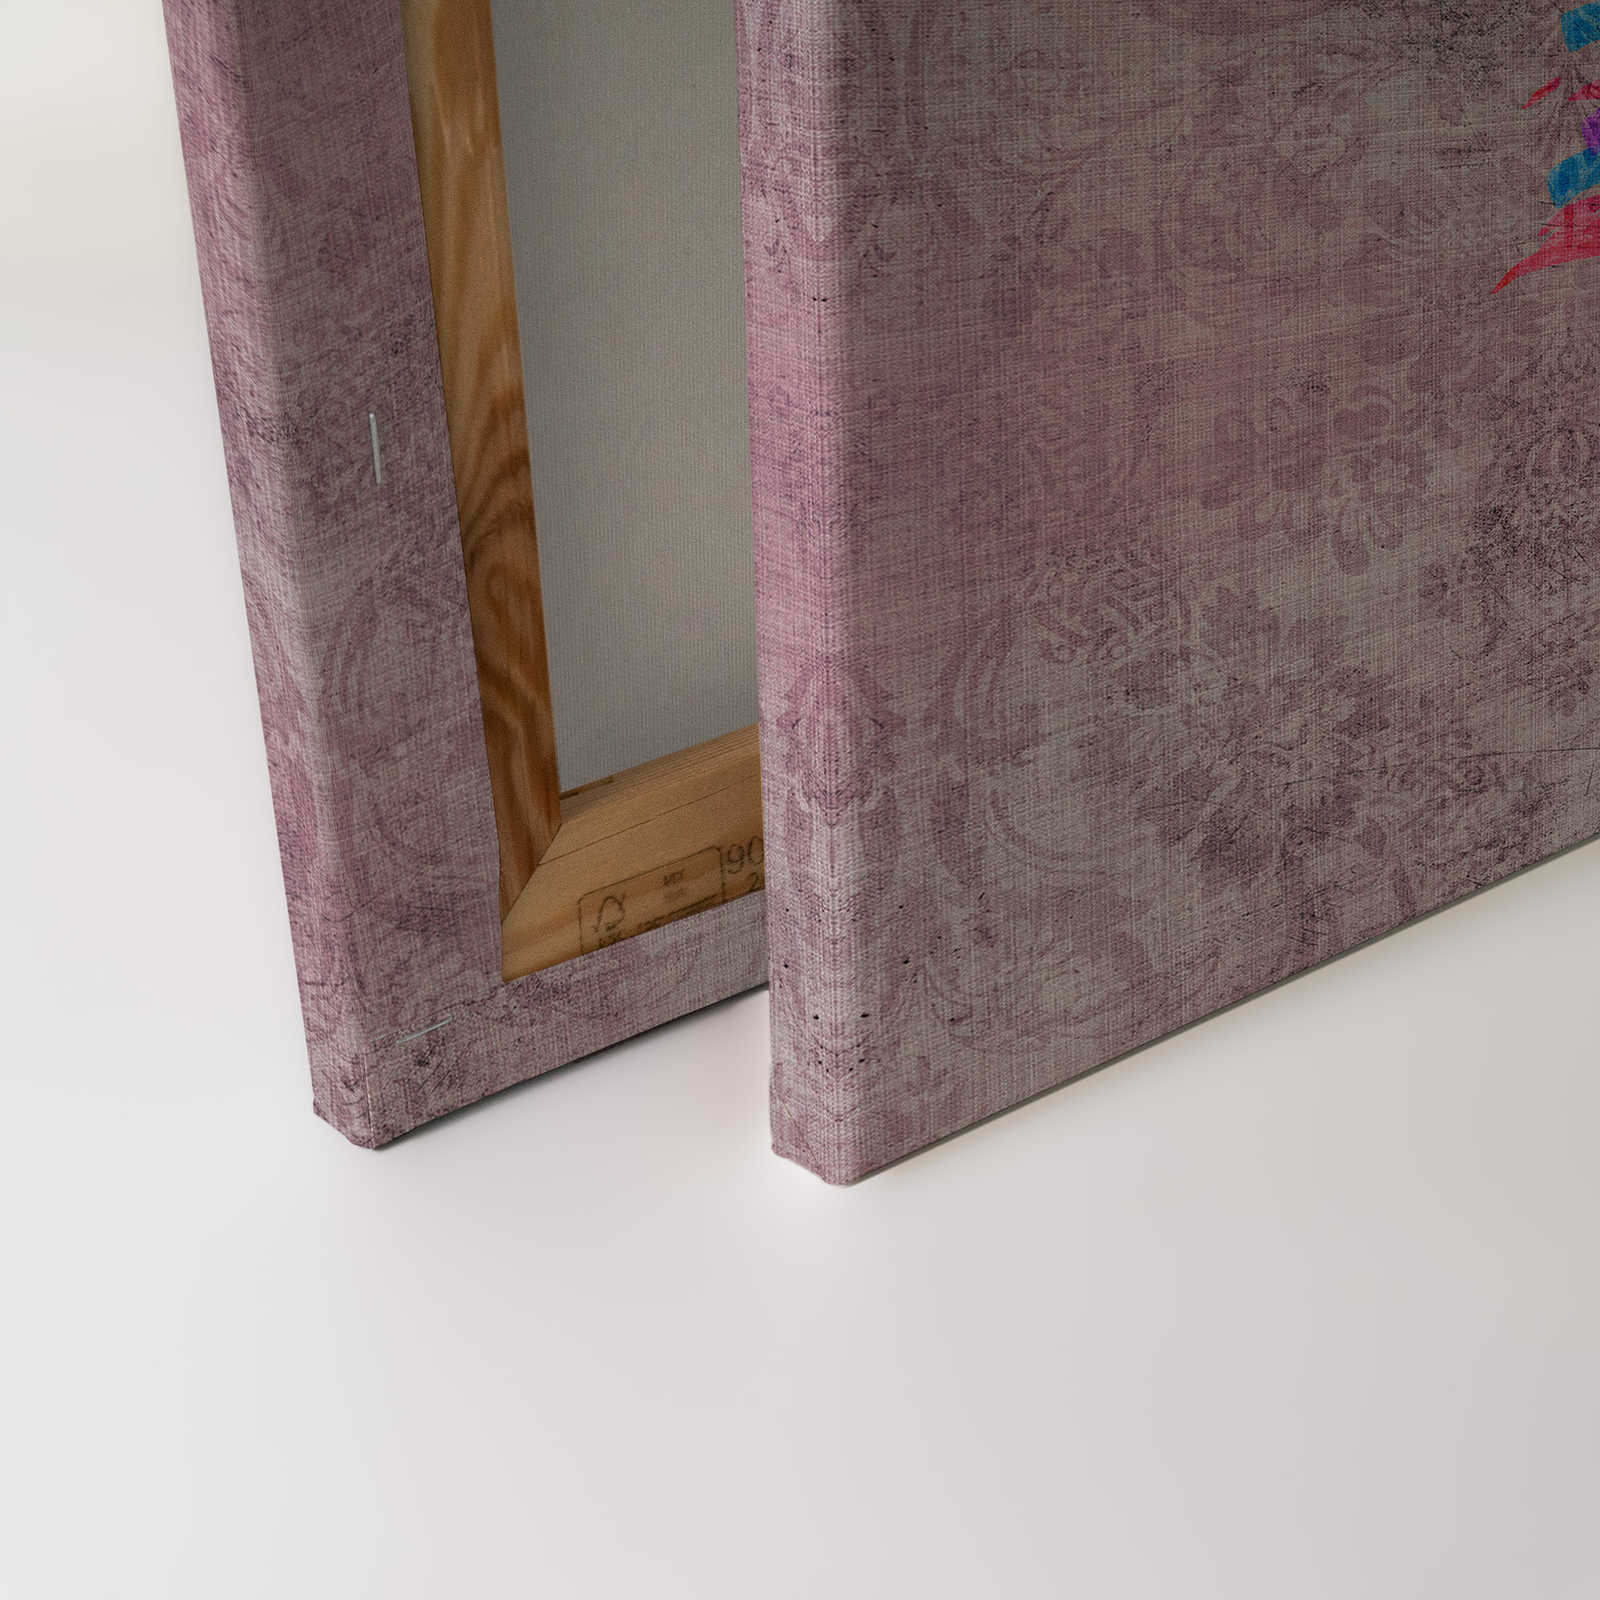             Pavo real 2 - Cuadro en lienzo con motivos y ornamentos de pavo real en estructura de lino natural - 0,90 m x 0,60 m
        